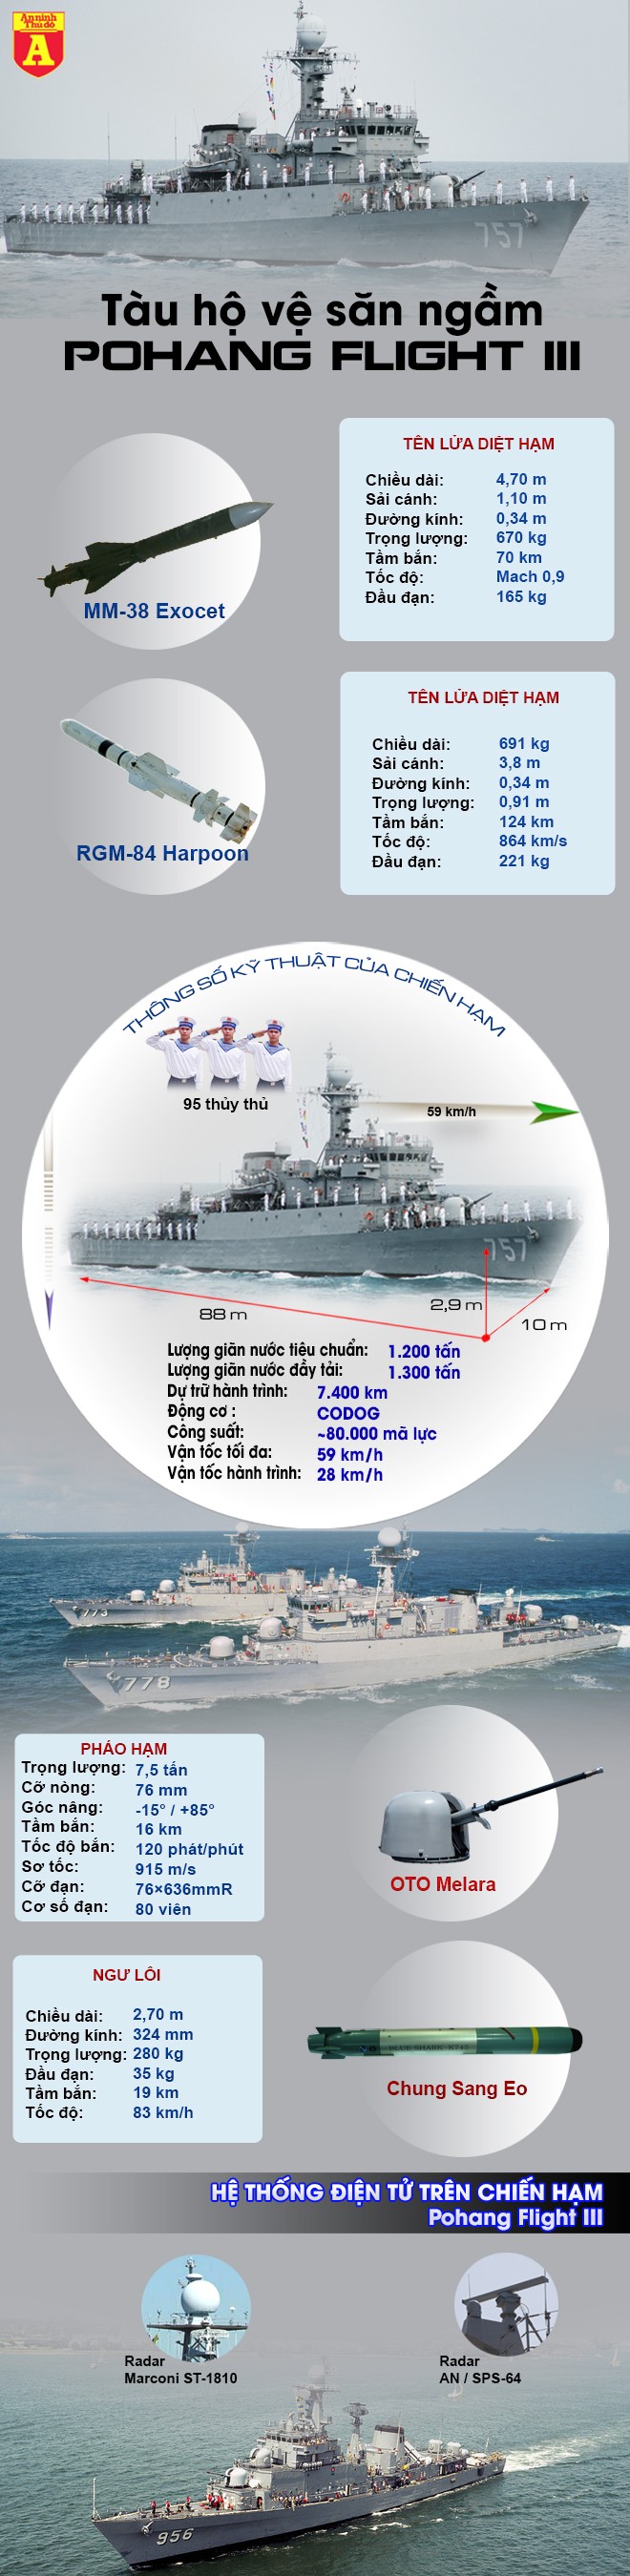 [Infographic] Sức mạnh chiến hạm săn ngầm Hàn Quốc vừa trao tặng cho Việt Nam ảnh 6